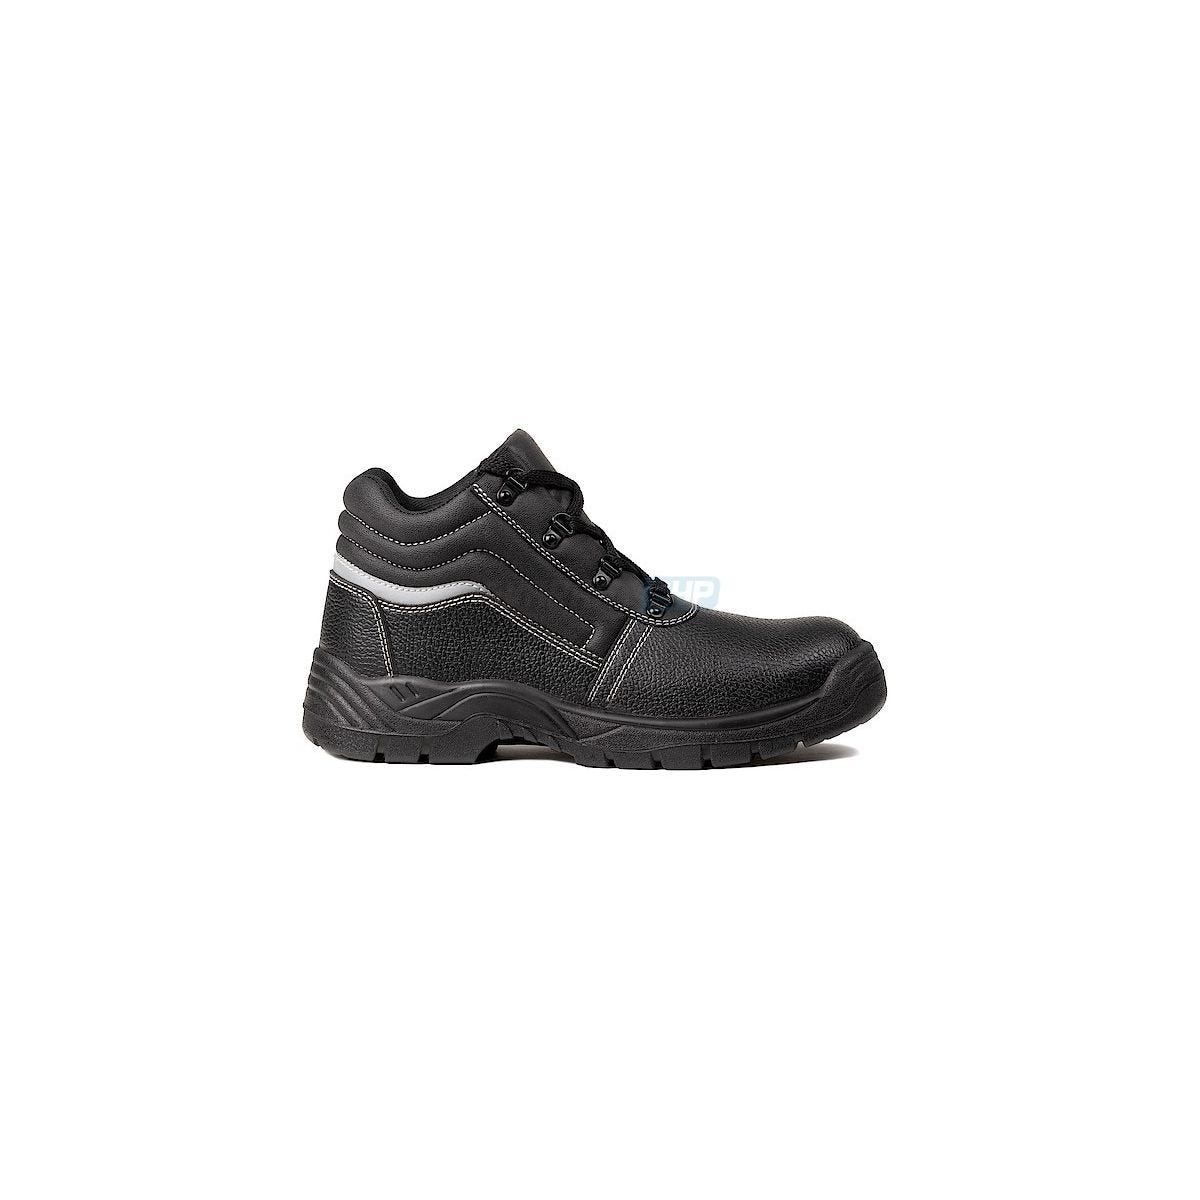 Chaussures de sécurité NACRITE S1P Haute Noir - COVERGUARD - Taille 39 0